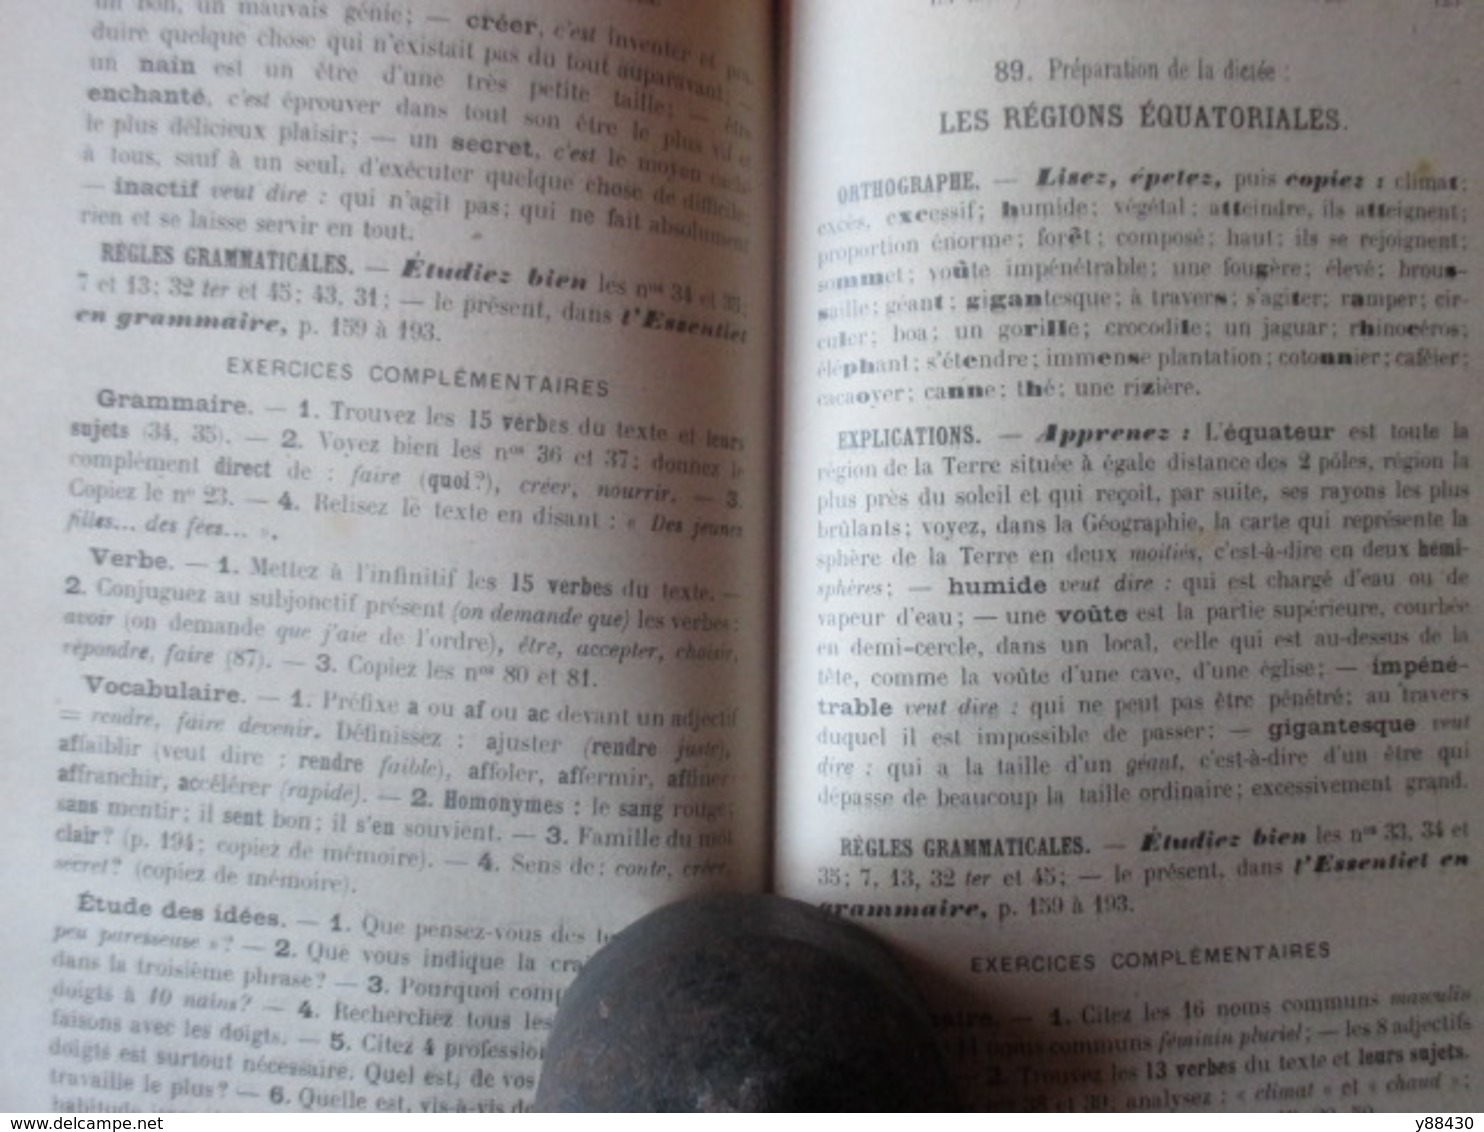 Livre - LA LANGUE FRANCAISE PAR LA DICTEE de 1923 - Cours Moyen - Librairie GEDALGE - 236 pages - 18 photos